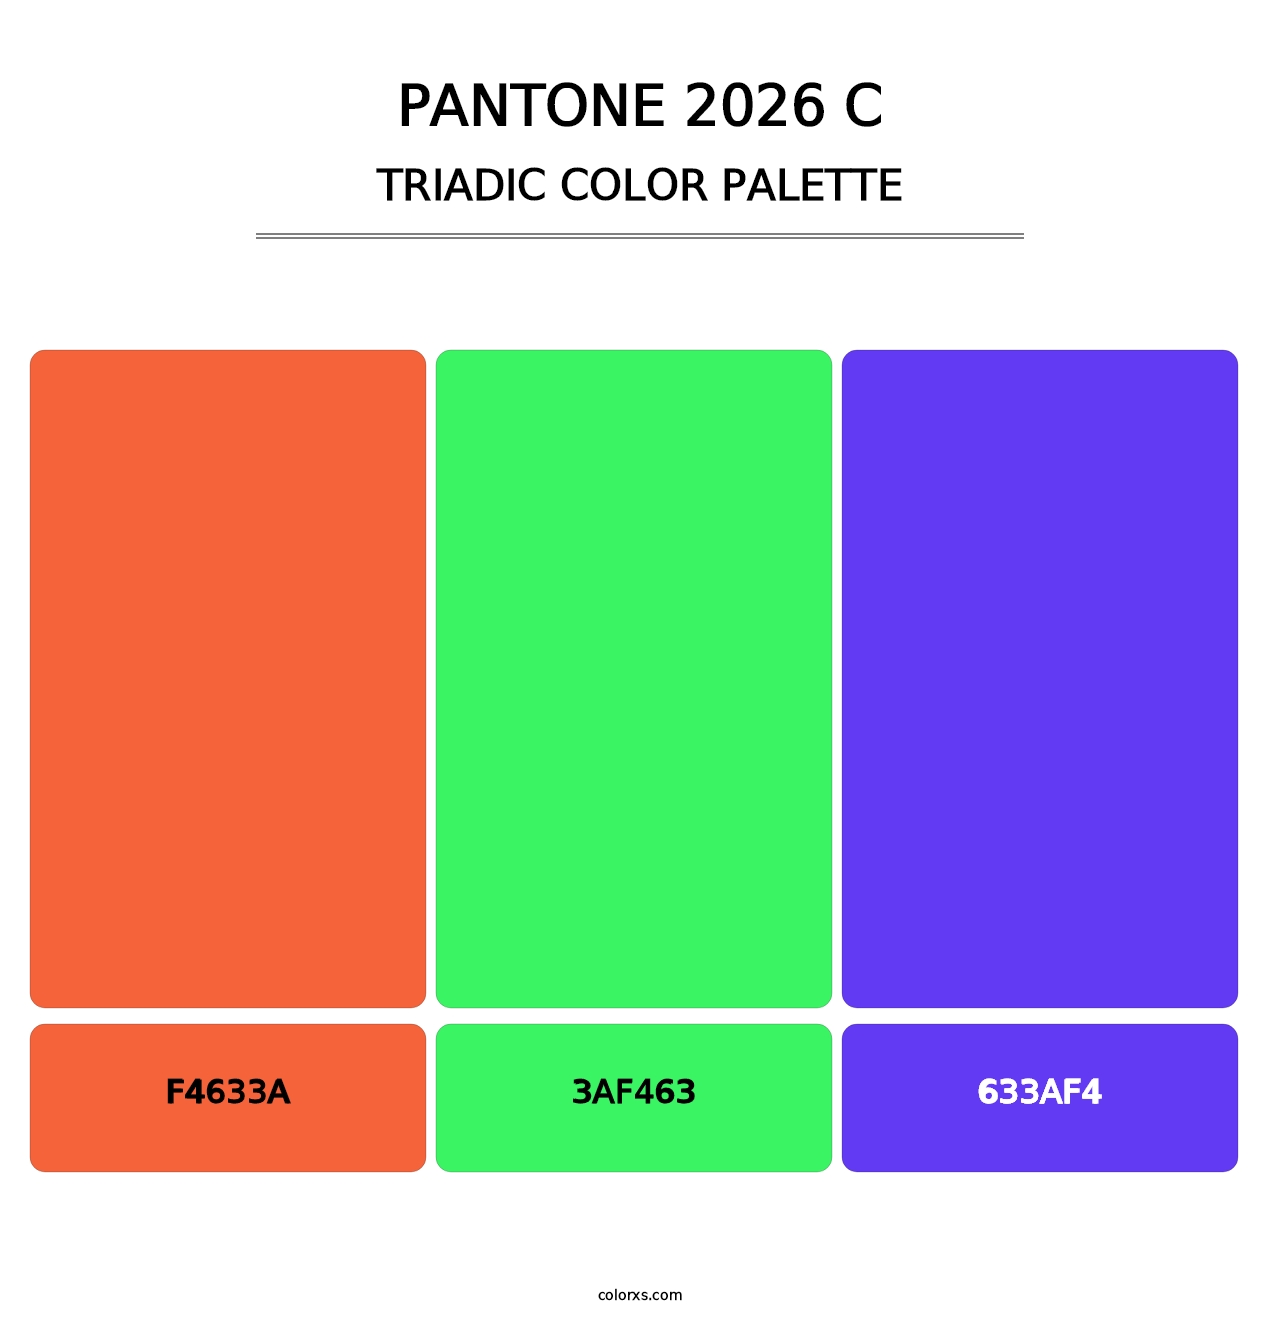 PANTONE 2026 C - Triadic Color Palette